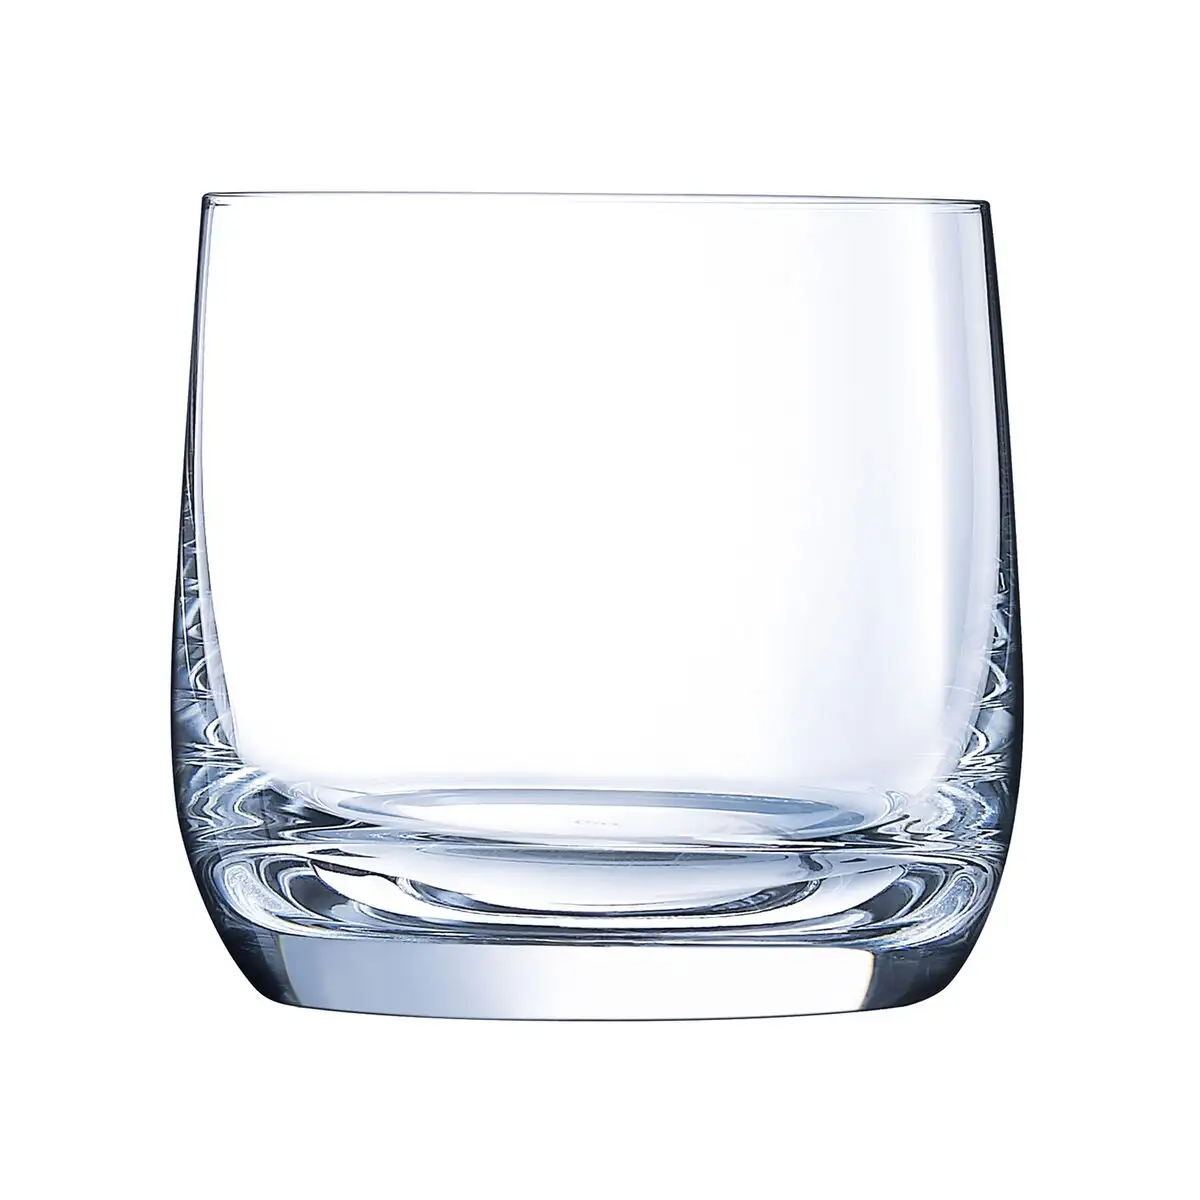 Set de verres chef sommelier vigne transparent verre 370 ml 6 unites _2923. Bienvenue sur DIAYTAR SENEGAL - Où Chaque Détail compte. Plongez dans notre univers et choisissez des produits qui ajoutent de l'éclat et de la joie à votre quotidien.